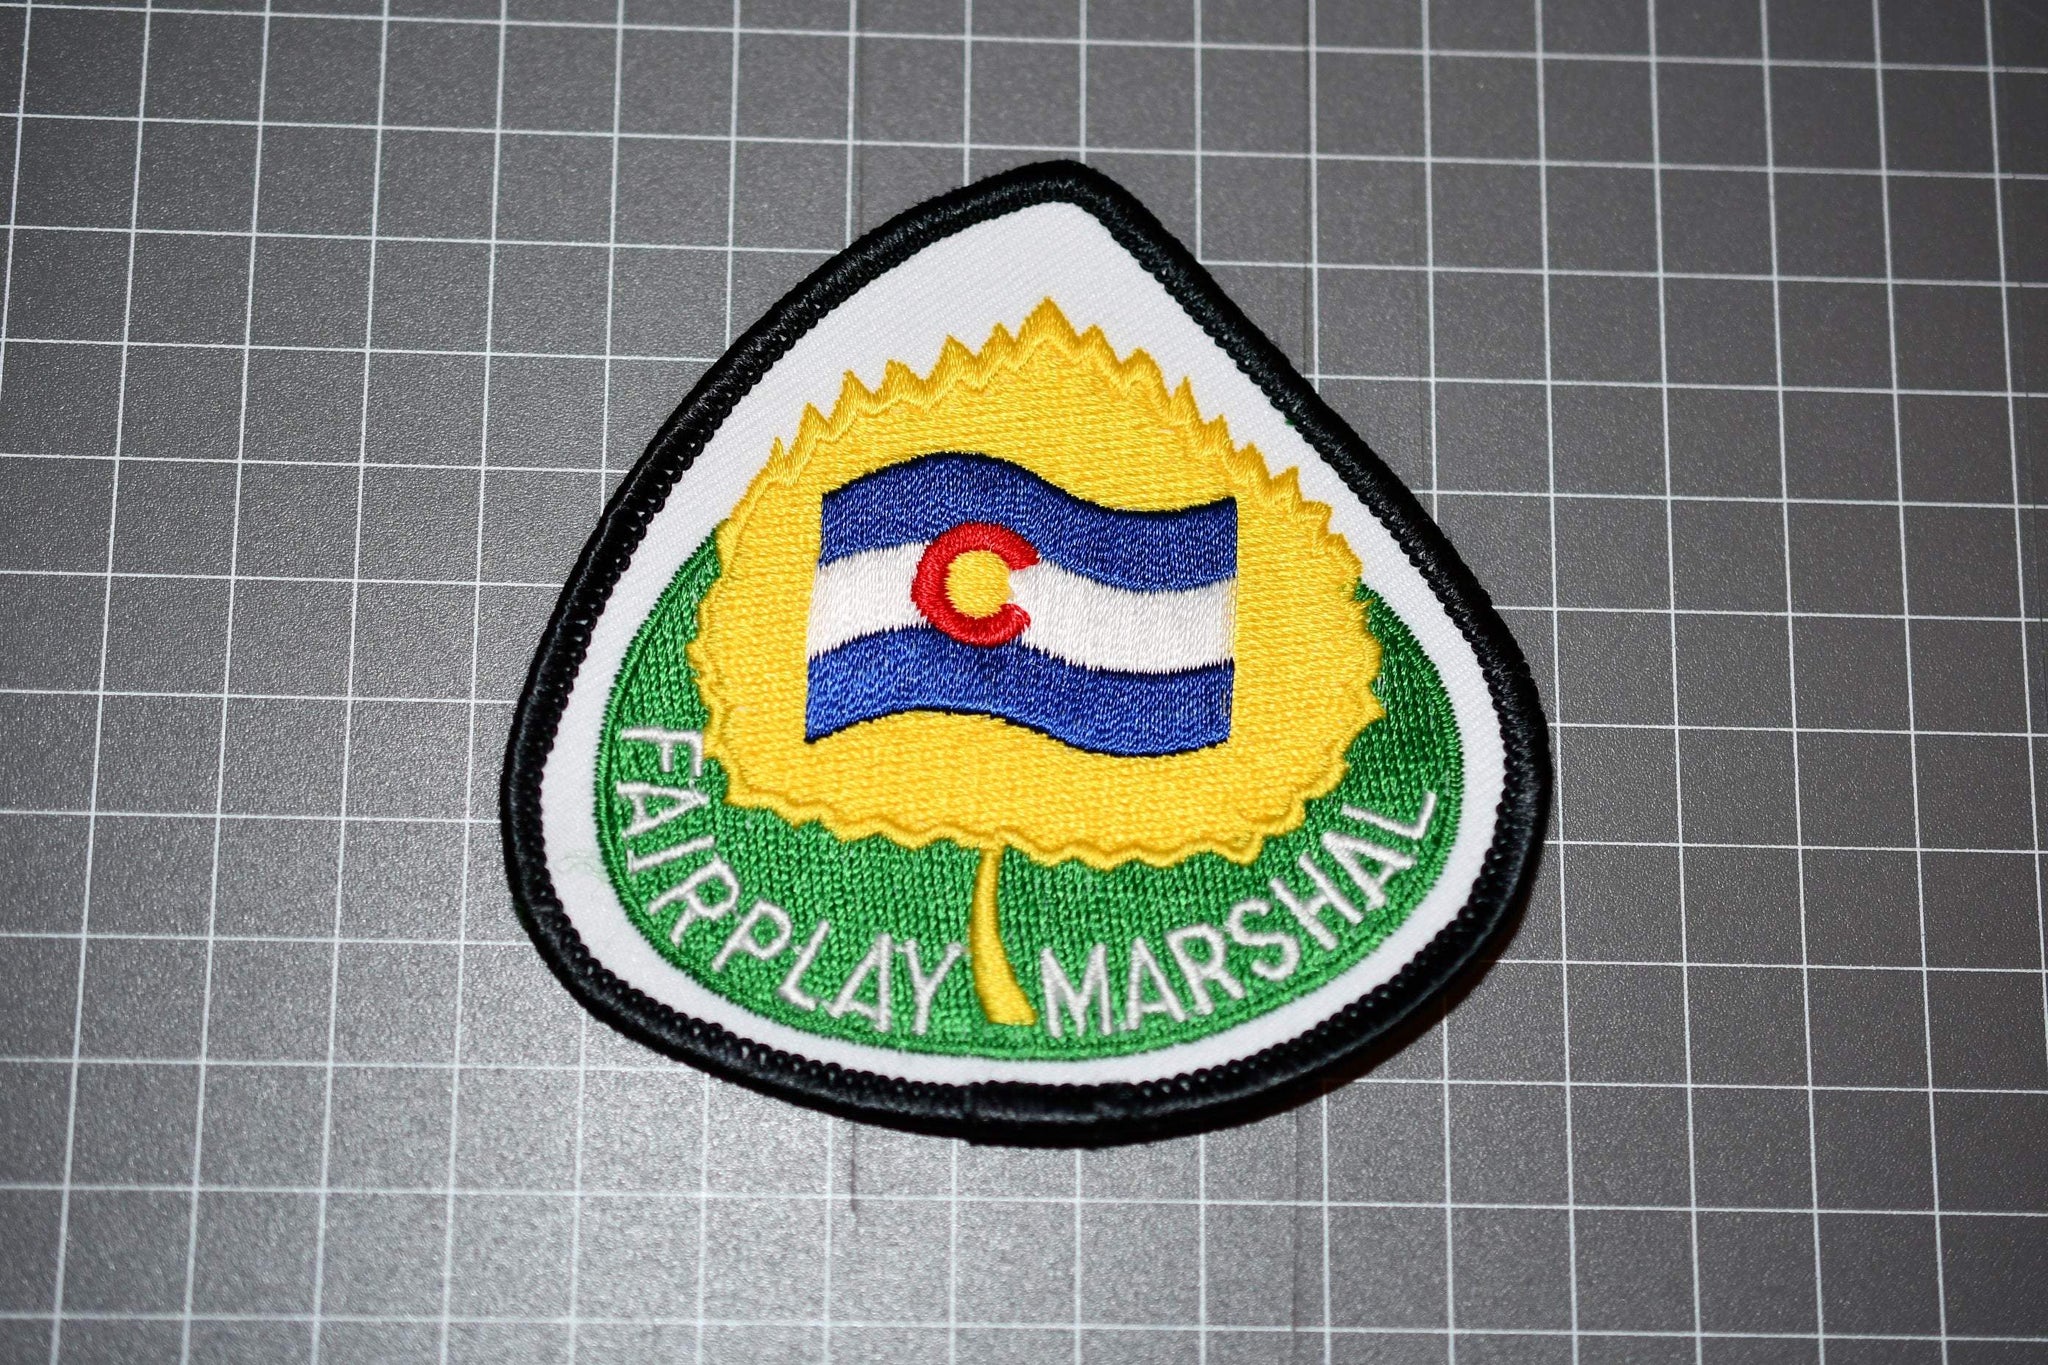 Fairplay Colorado Marshal Patch (B1)